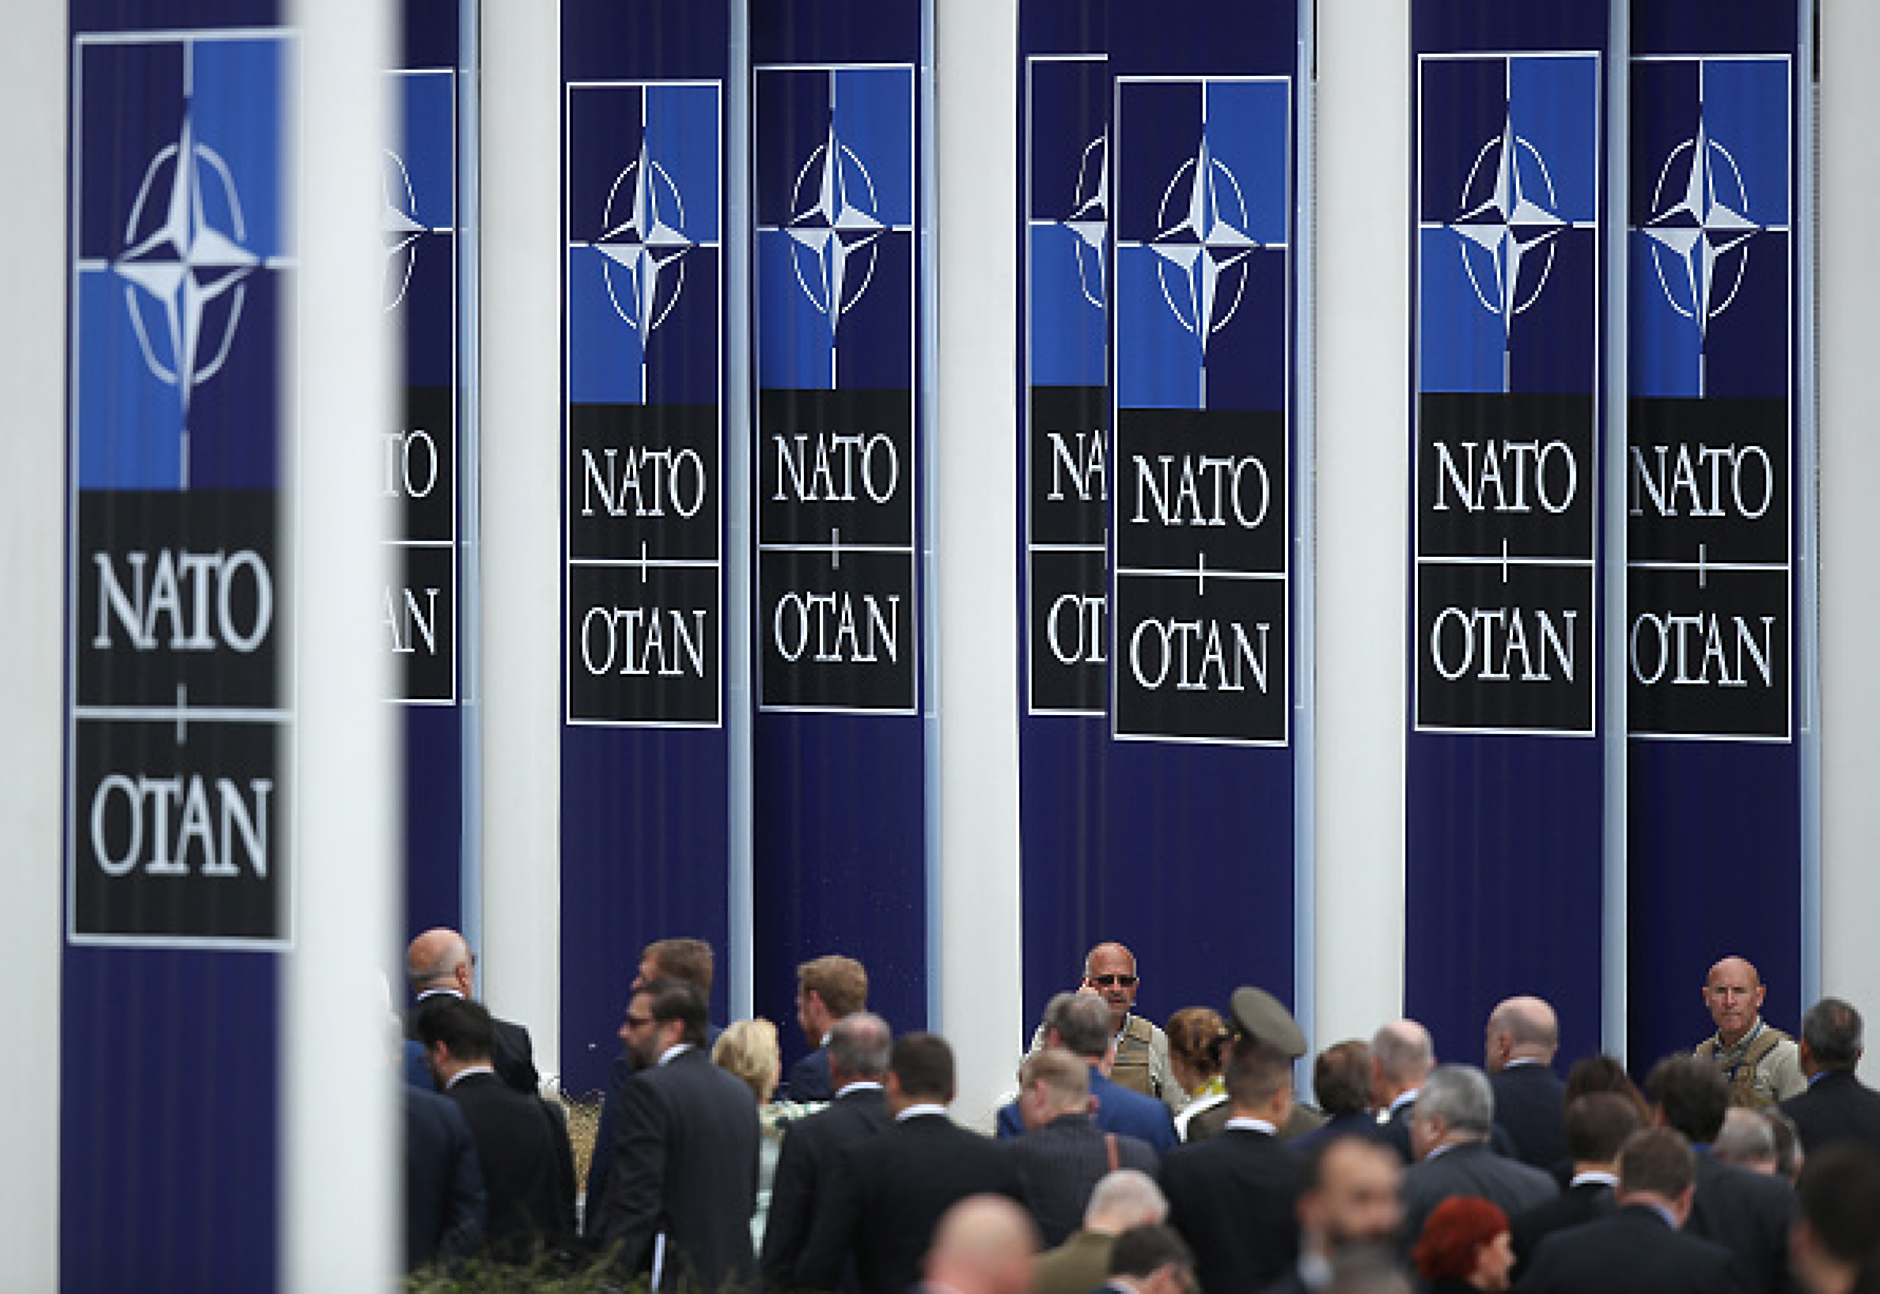 Български фирми ще могат да кандидатстват във фонд за иновации на НАТО с бюджет 1 млрд. евро